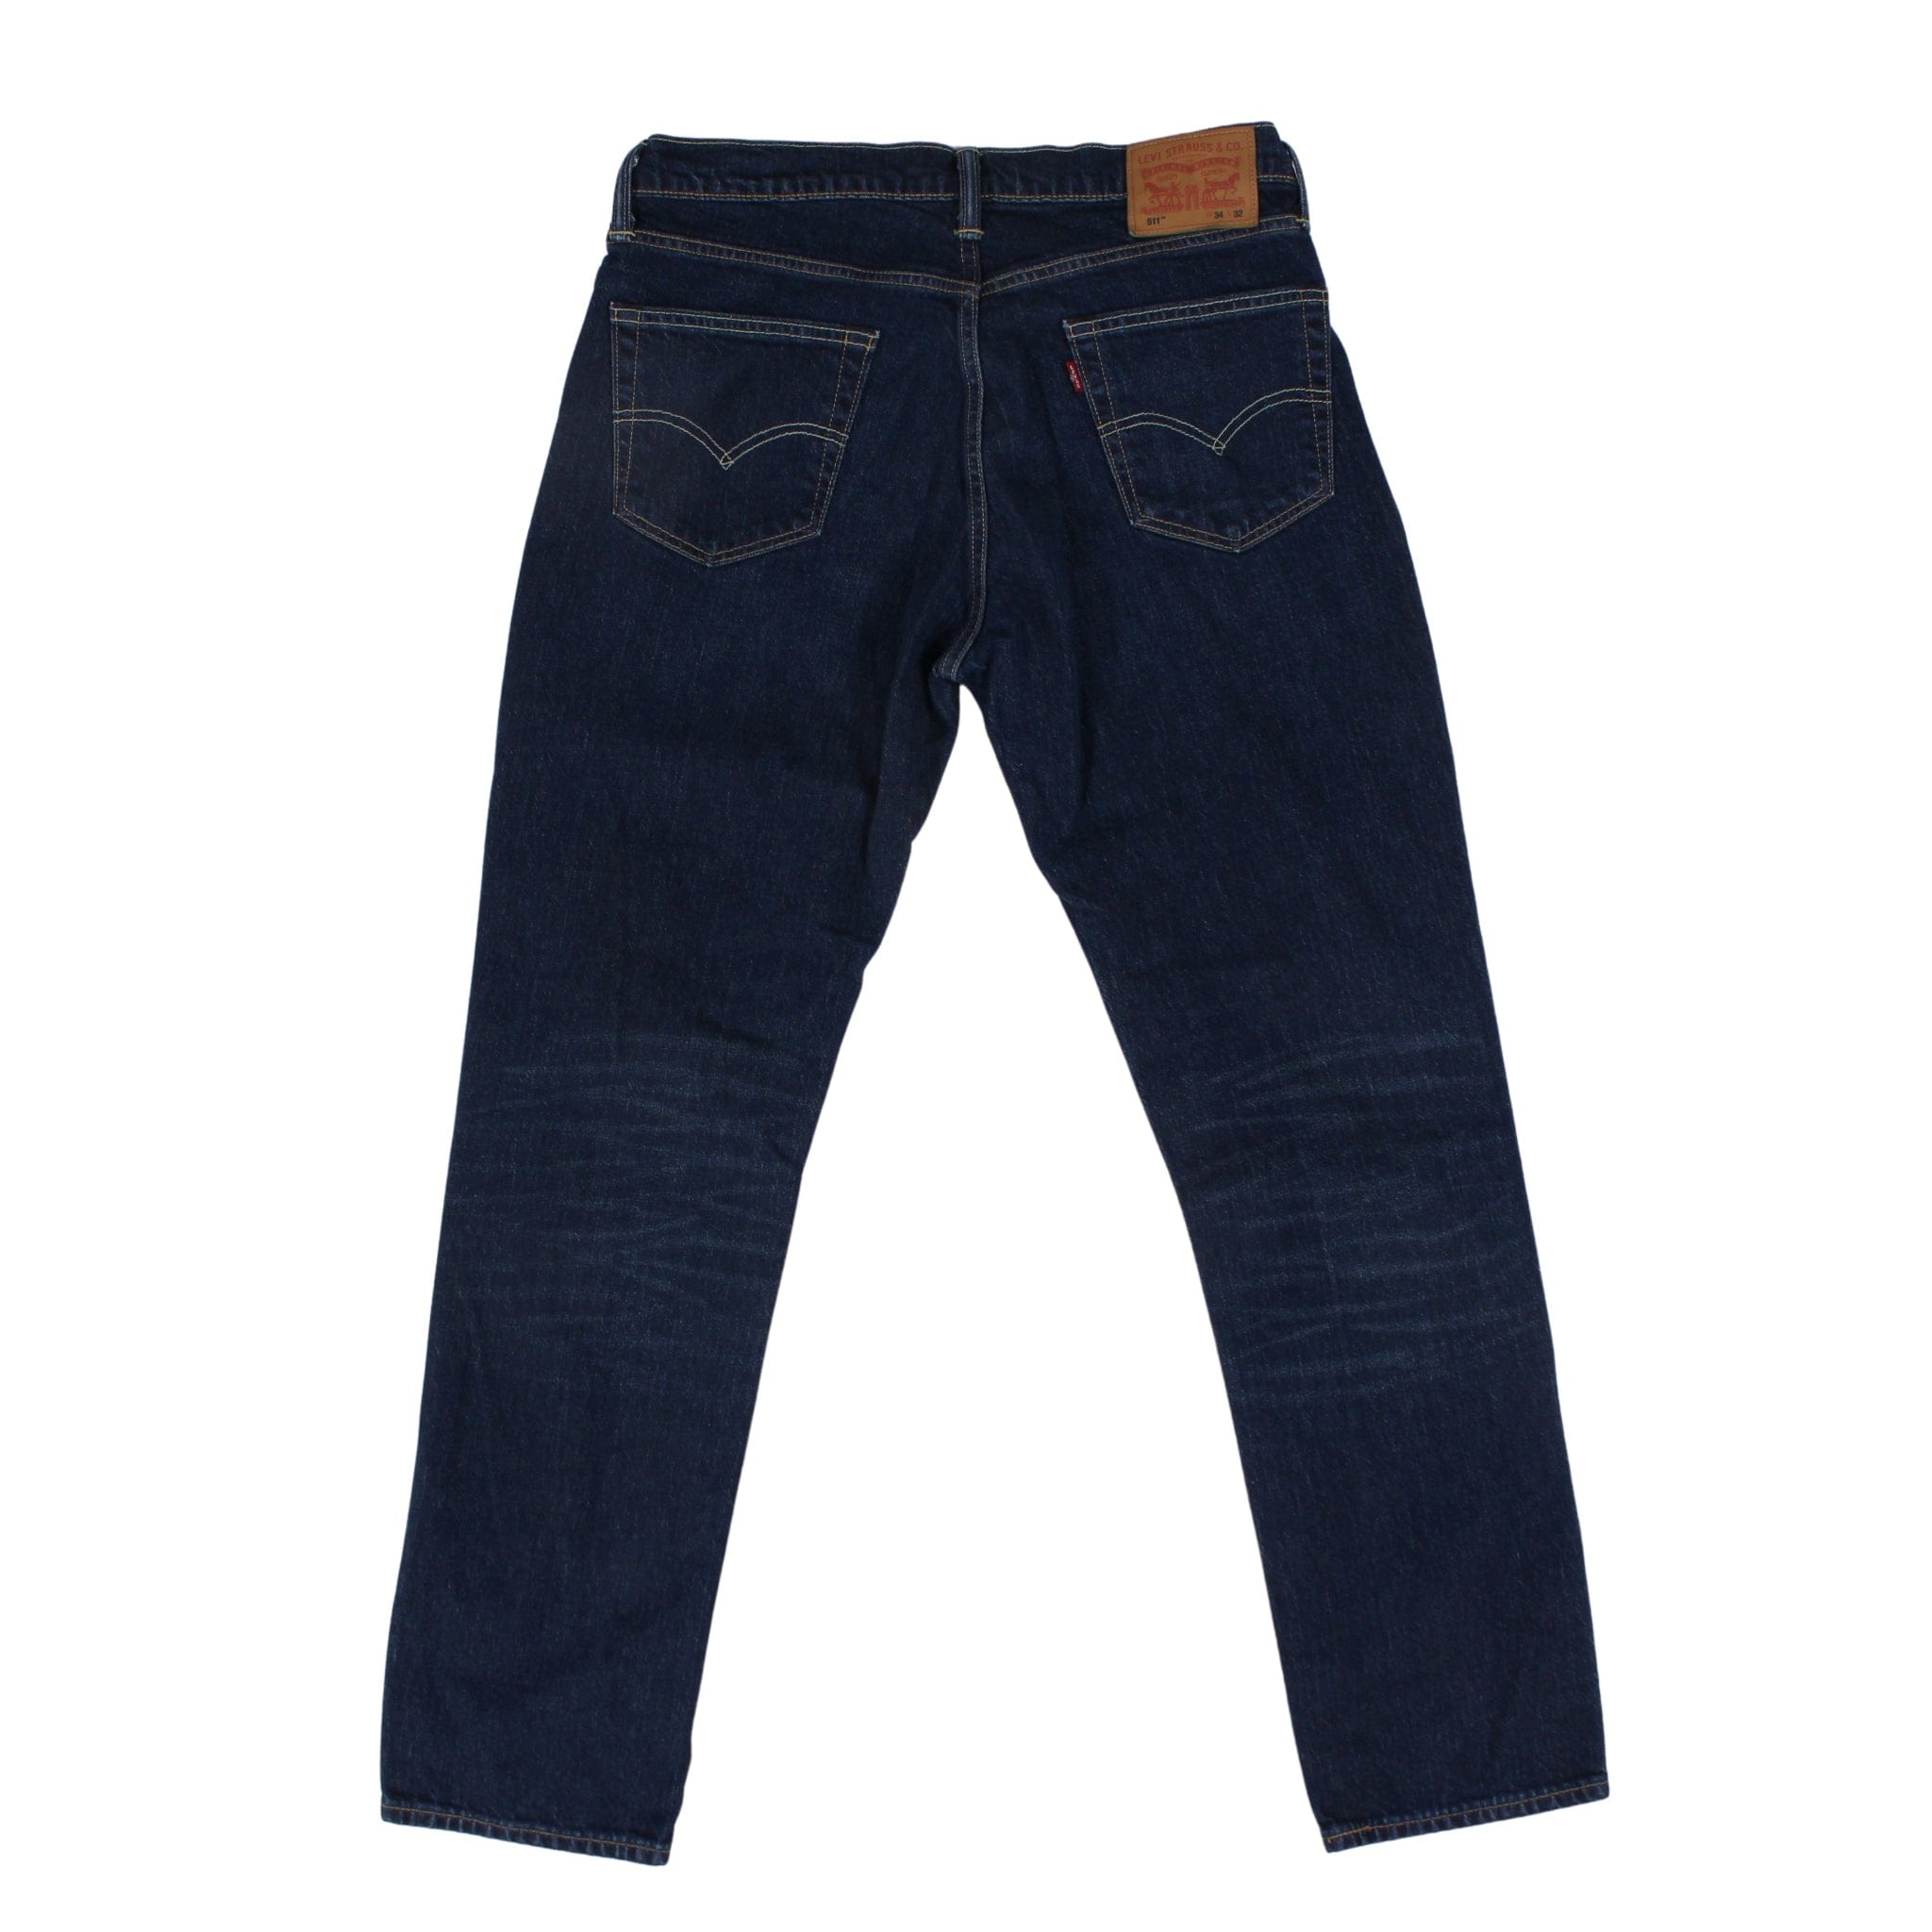 Levis 511 Slim Fit Denim Jeans Size 34 x 32 | Proper Vintage